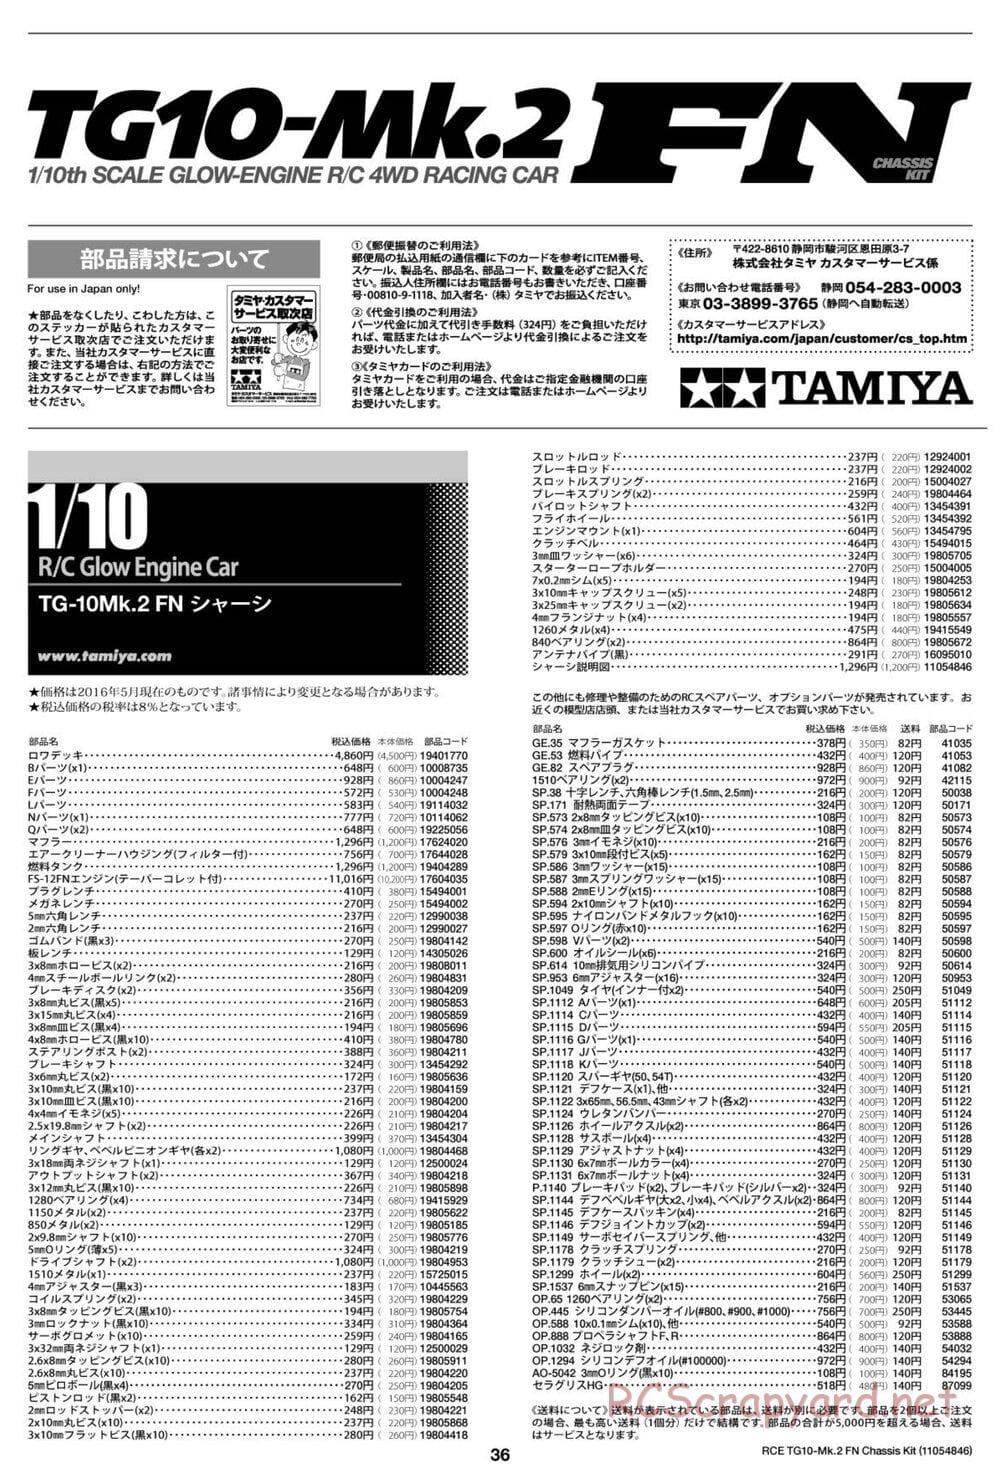 Tamiya - TG10 Mk.2 FN Chassis - Manual - Page 36